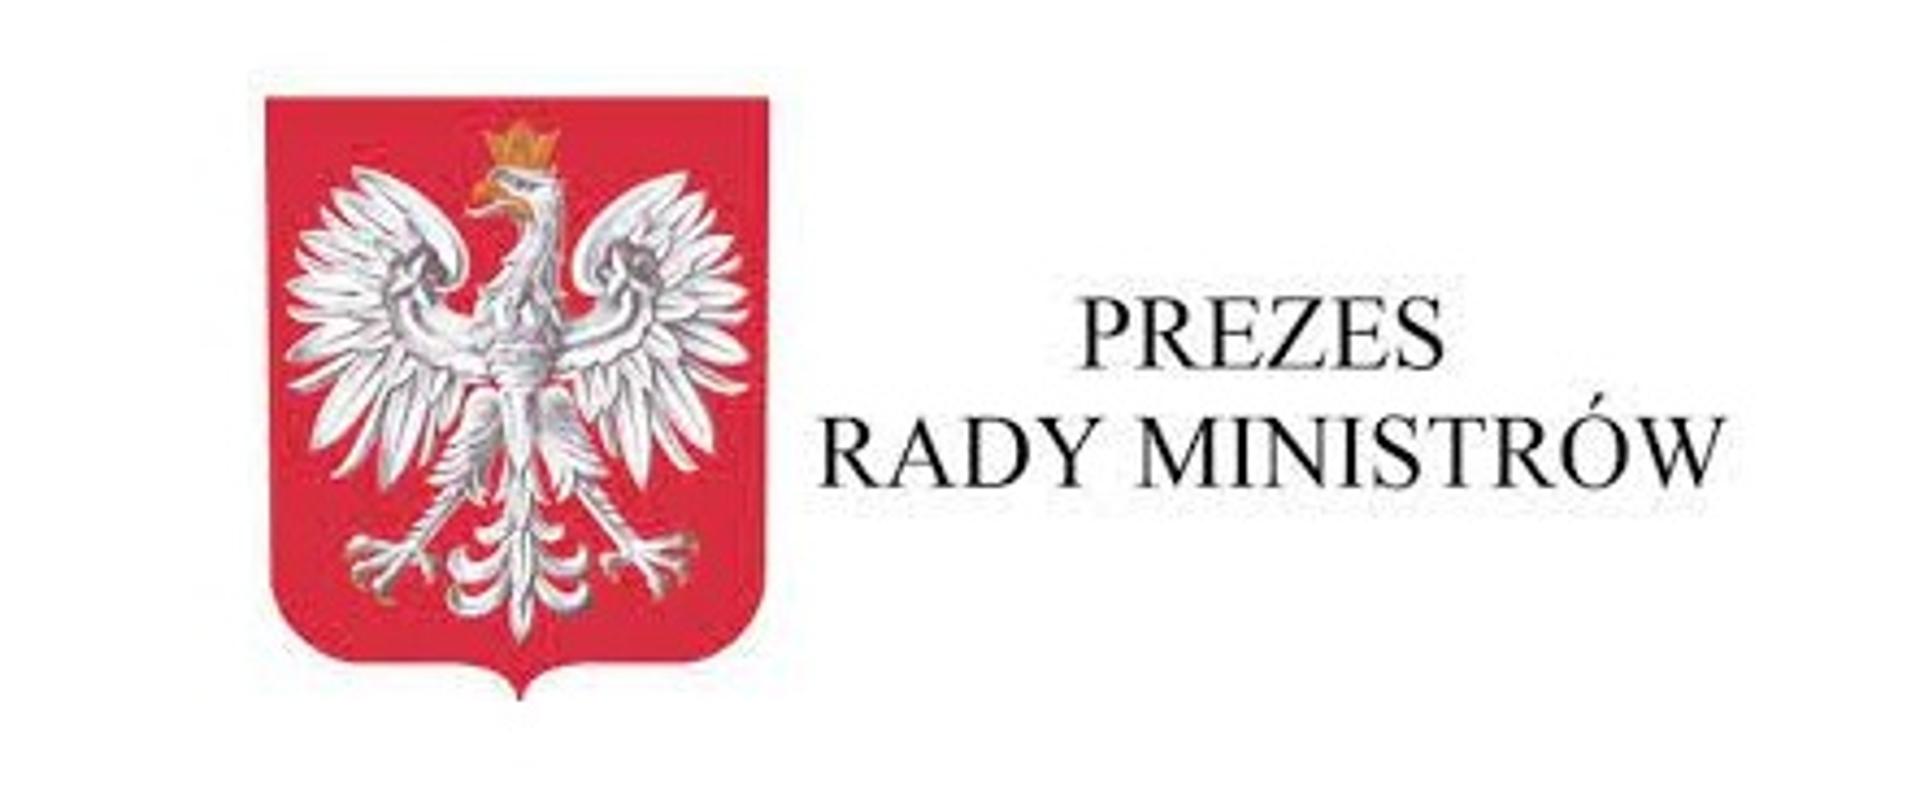 Prezes Rady Ministrów Logo